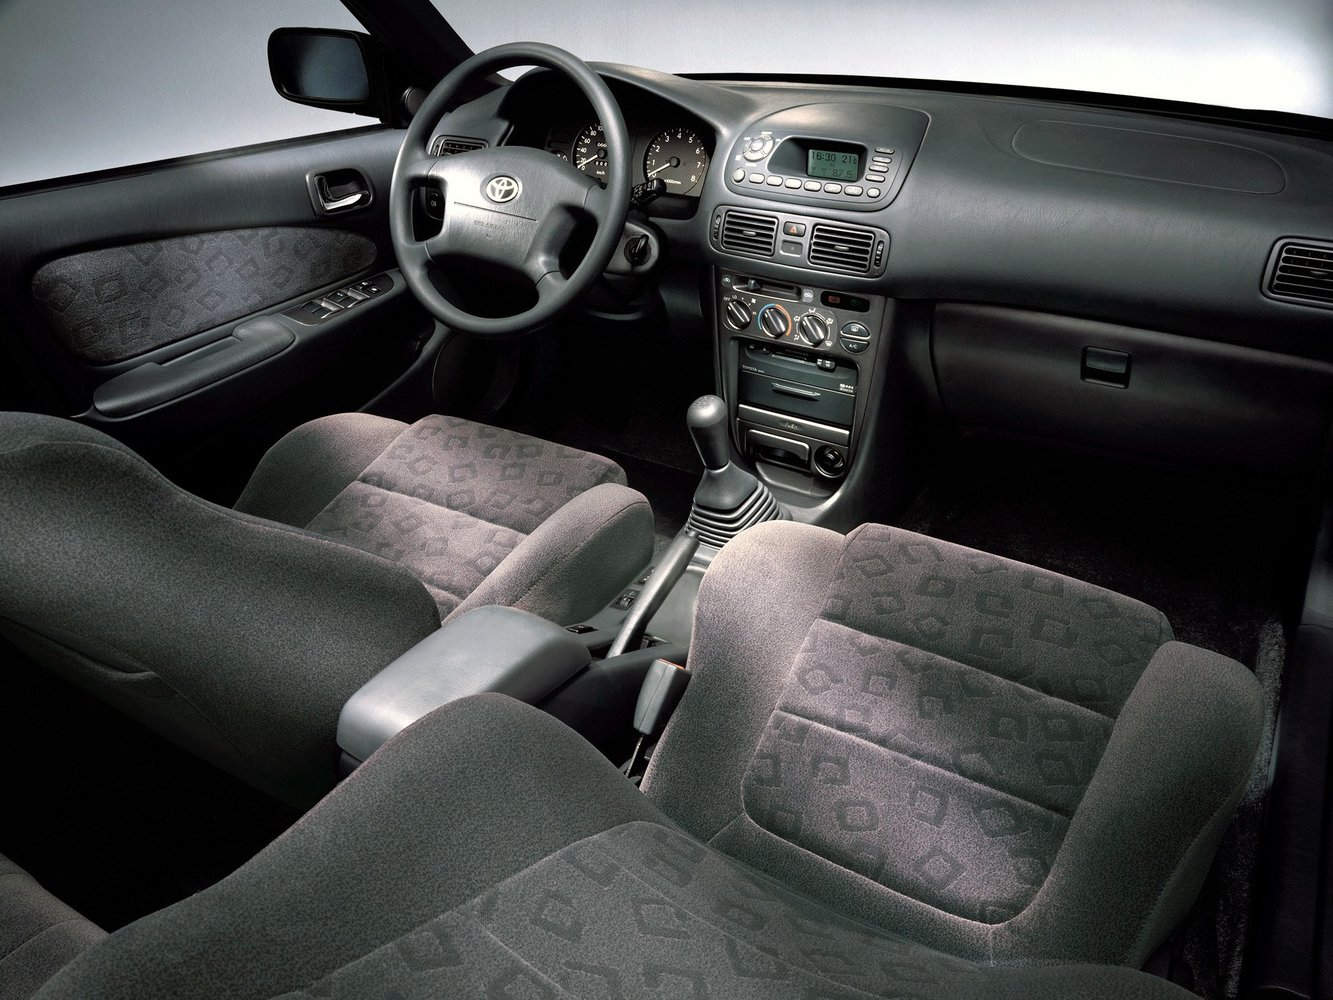 хэтчбек 5 дв. Toyota Corolla 1999 - 2002г выпуска модификация 1.3 AT (85 л.с.)